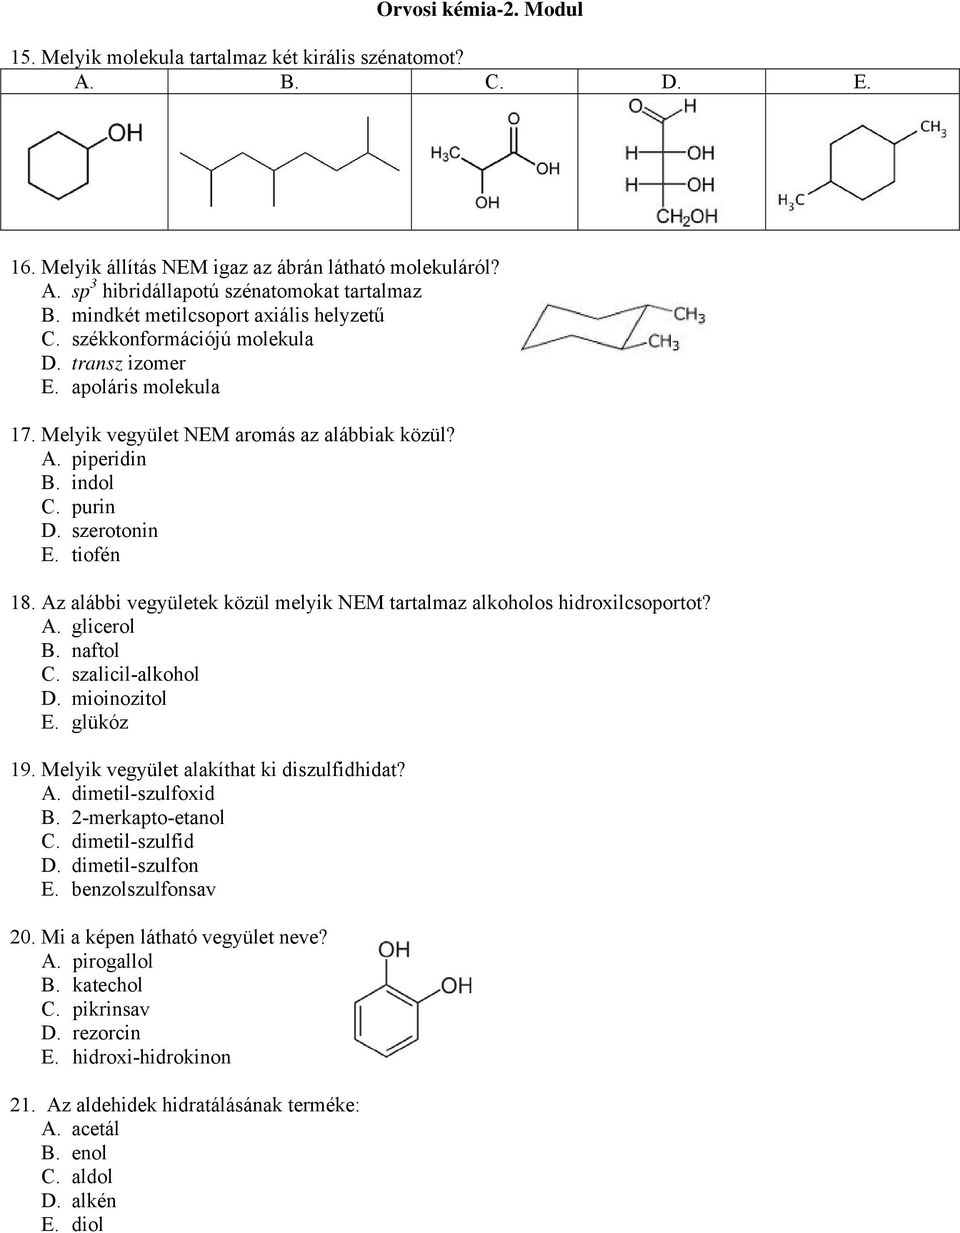 szerotonin E. tiofén 18. Az alábbi vegyületek közül melyik NEM tartalmaz alkoholos hidroxilcsoportot? A. glicerol B. naftol C. szalicil-alkohol D. mioinozitol E. glükóz 19.